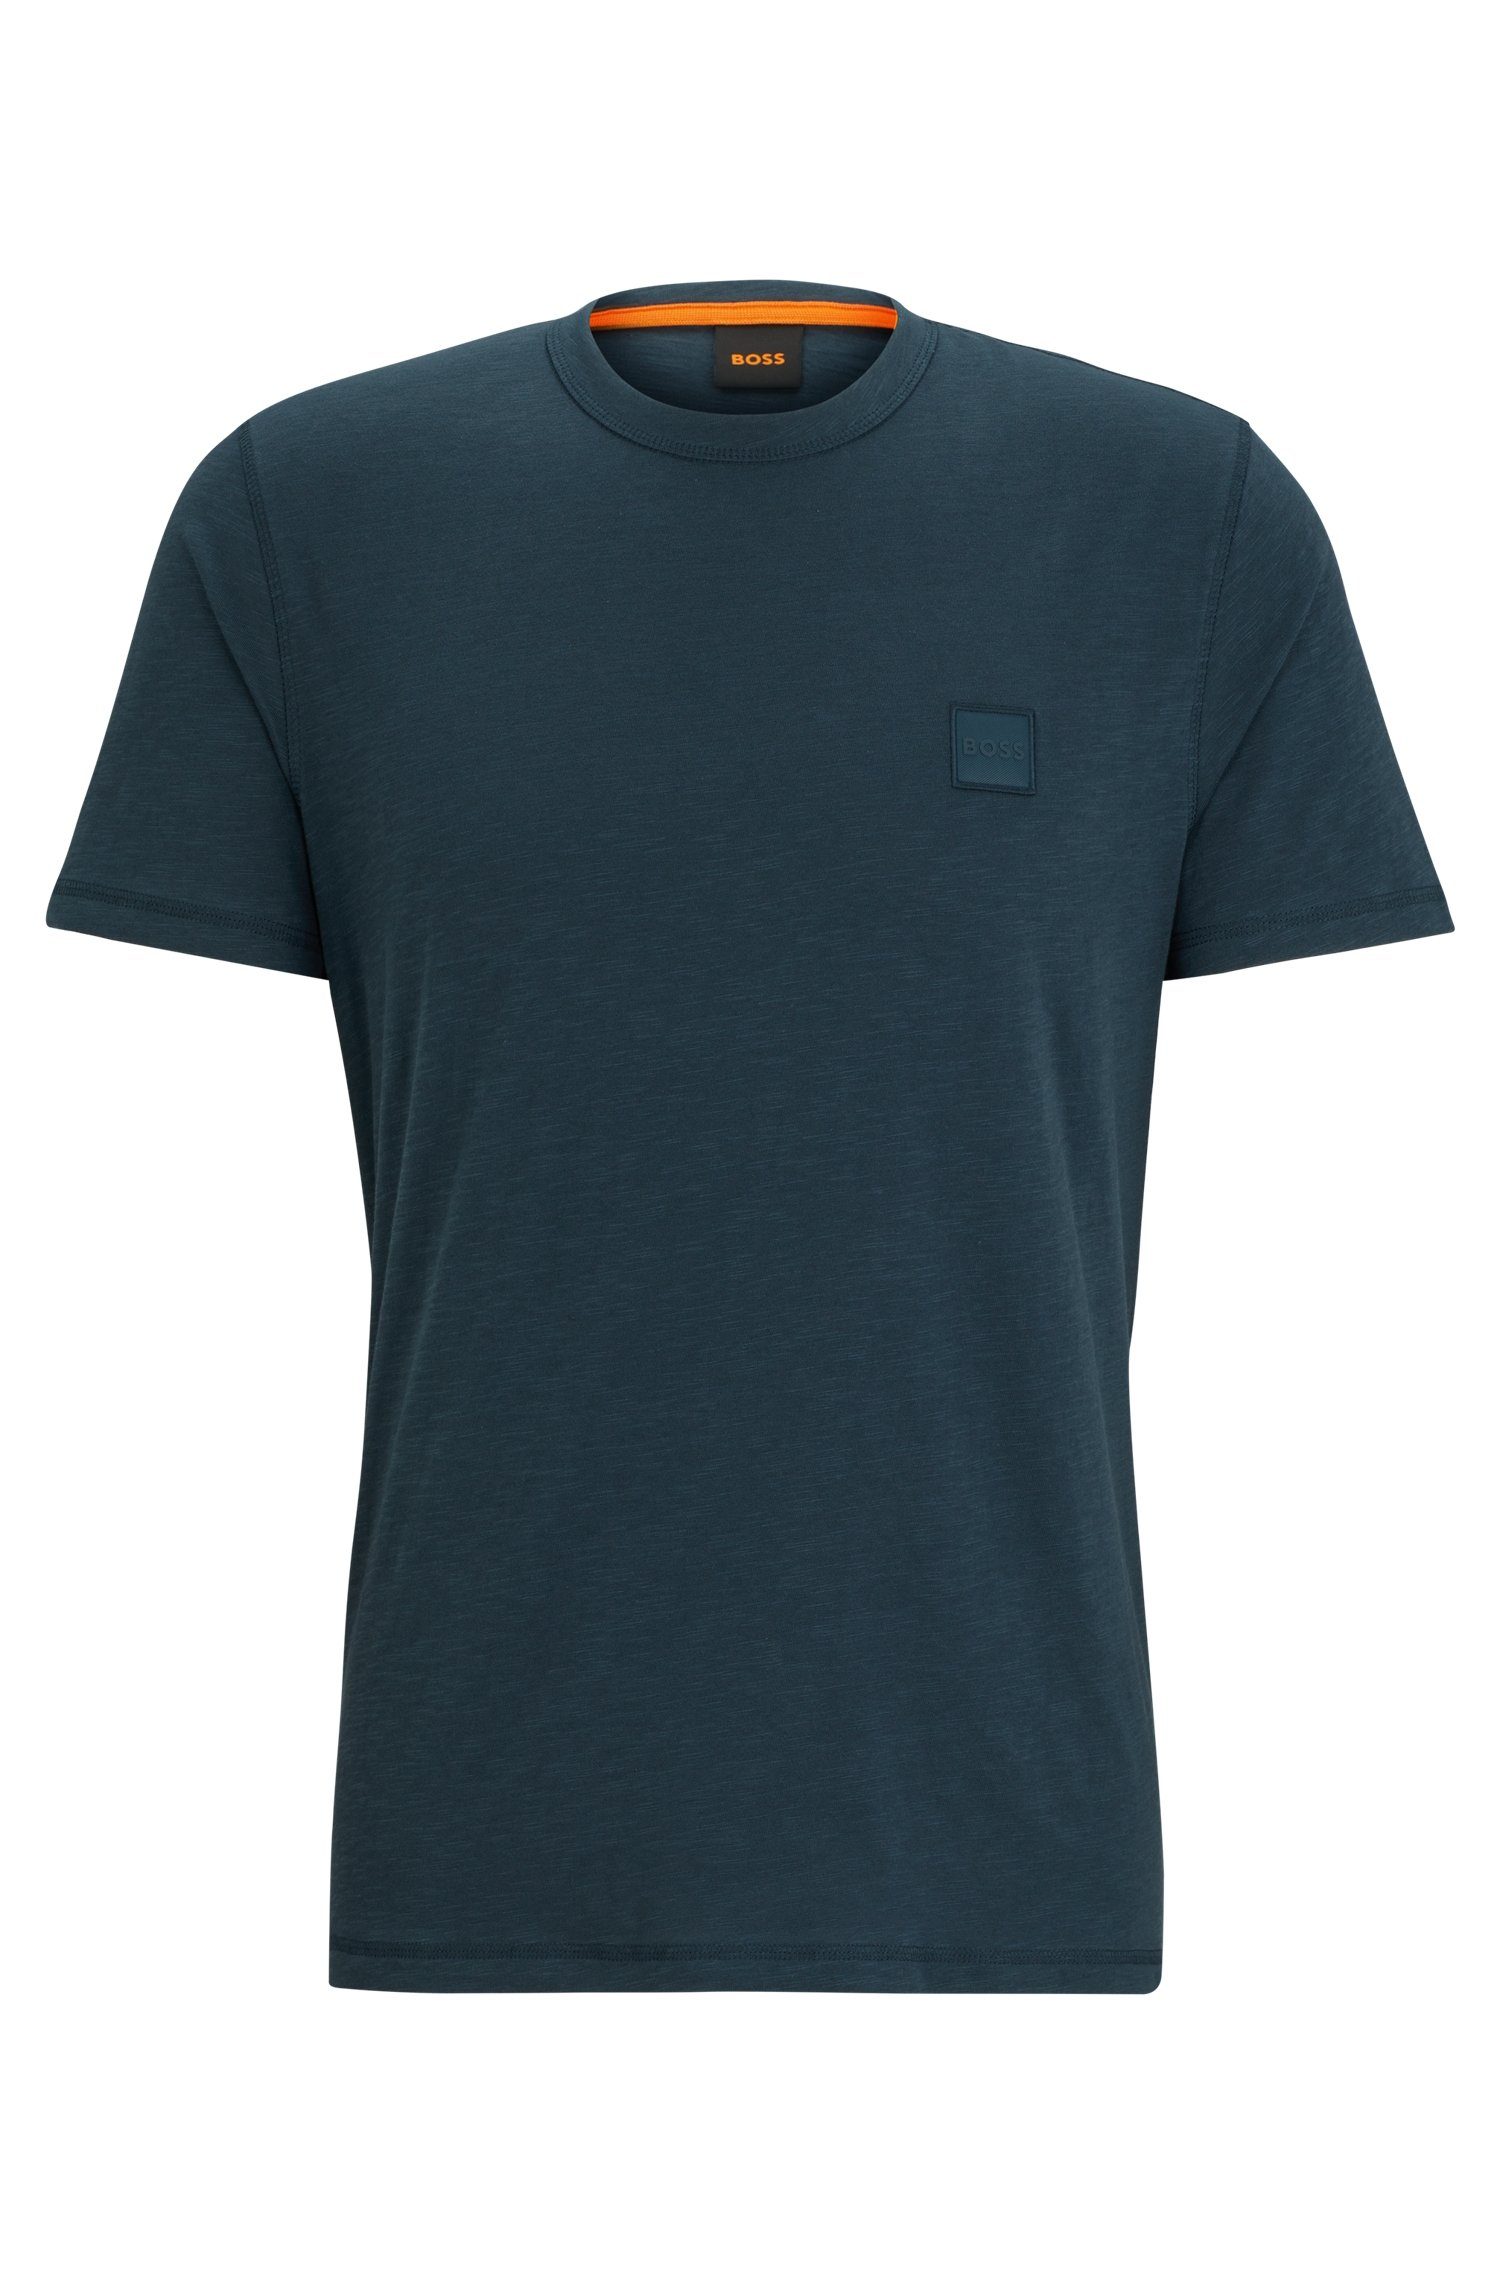 BOSS ORANGE T-Shirt Tegood Logo auf Open_Green388 der Brust BOSS mit